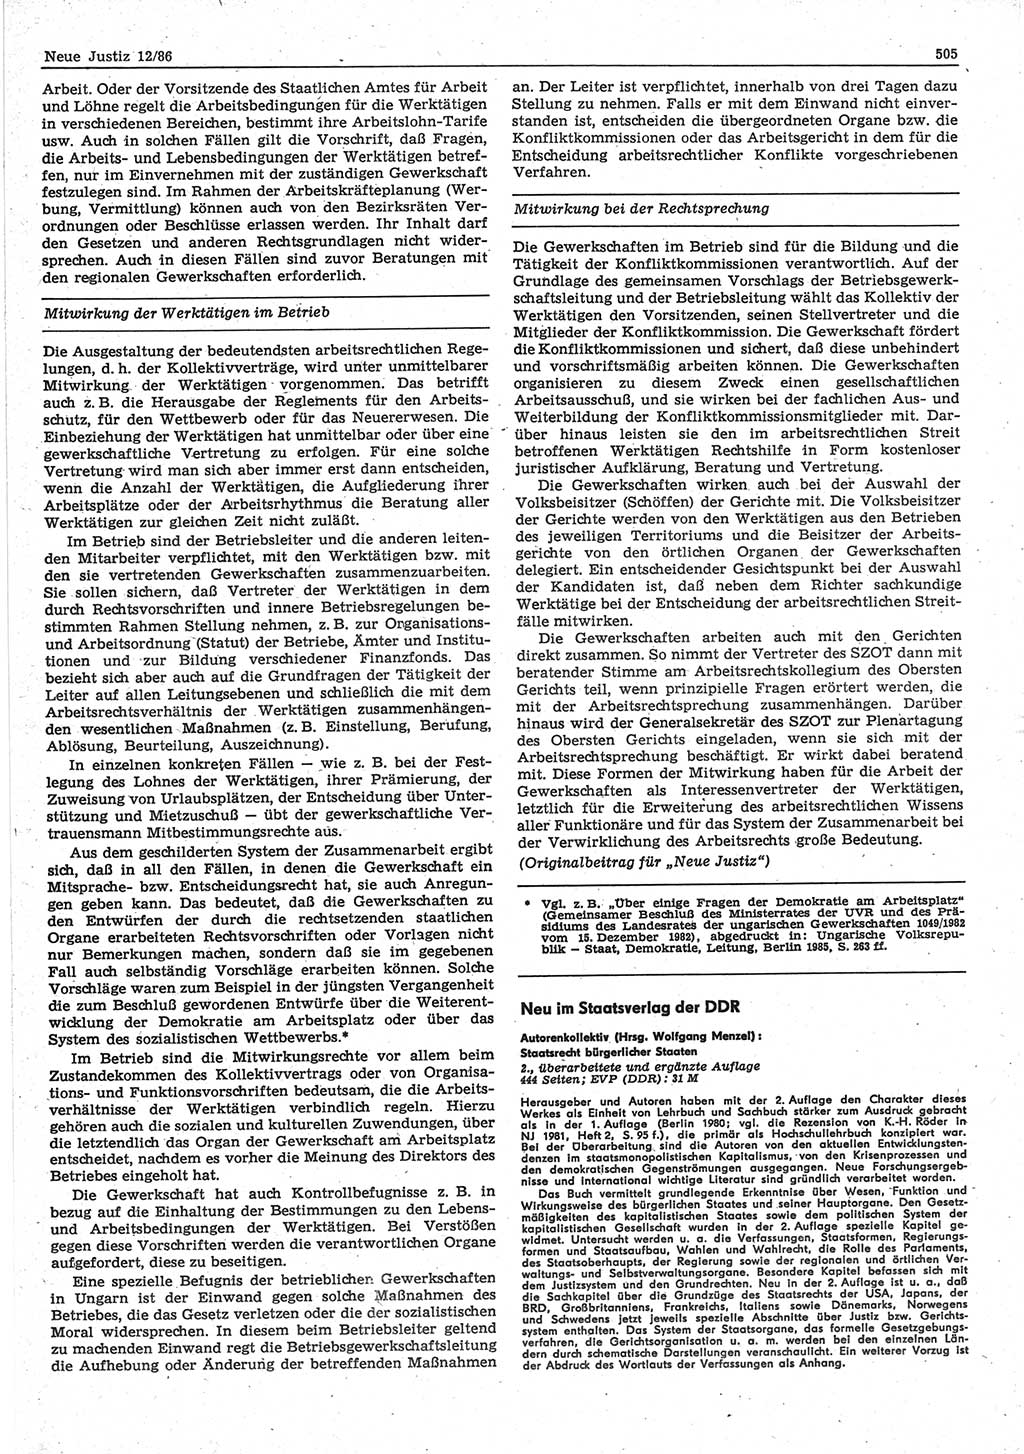 Neue Justiz (NJ), Zeitschrift für sozialistisches Recht und Gesetzlichkeit [Deutsche Demokratische Republik (DDR)], 40. Jahrgang 1986, Seite 505 (NJ DDR 1986, S. 505)